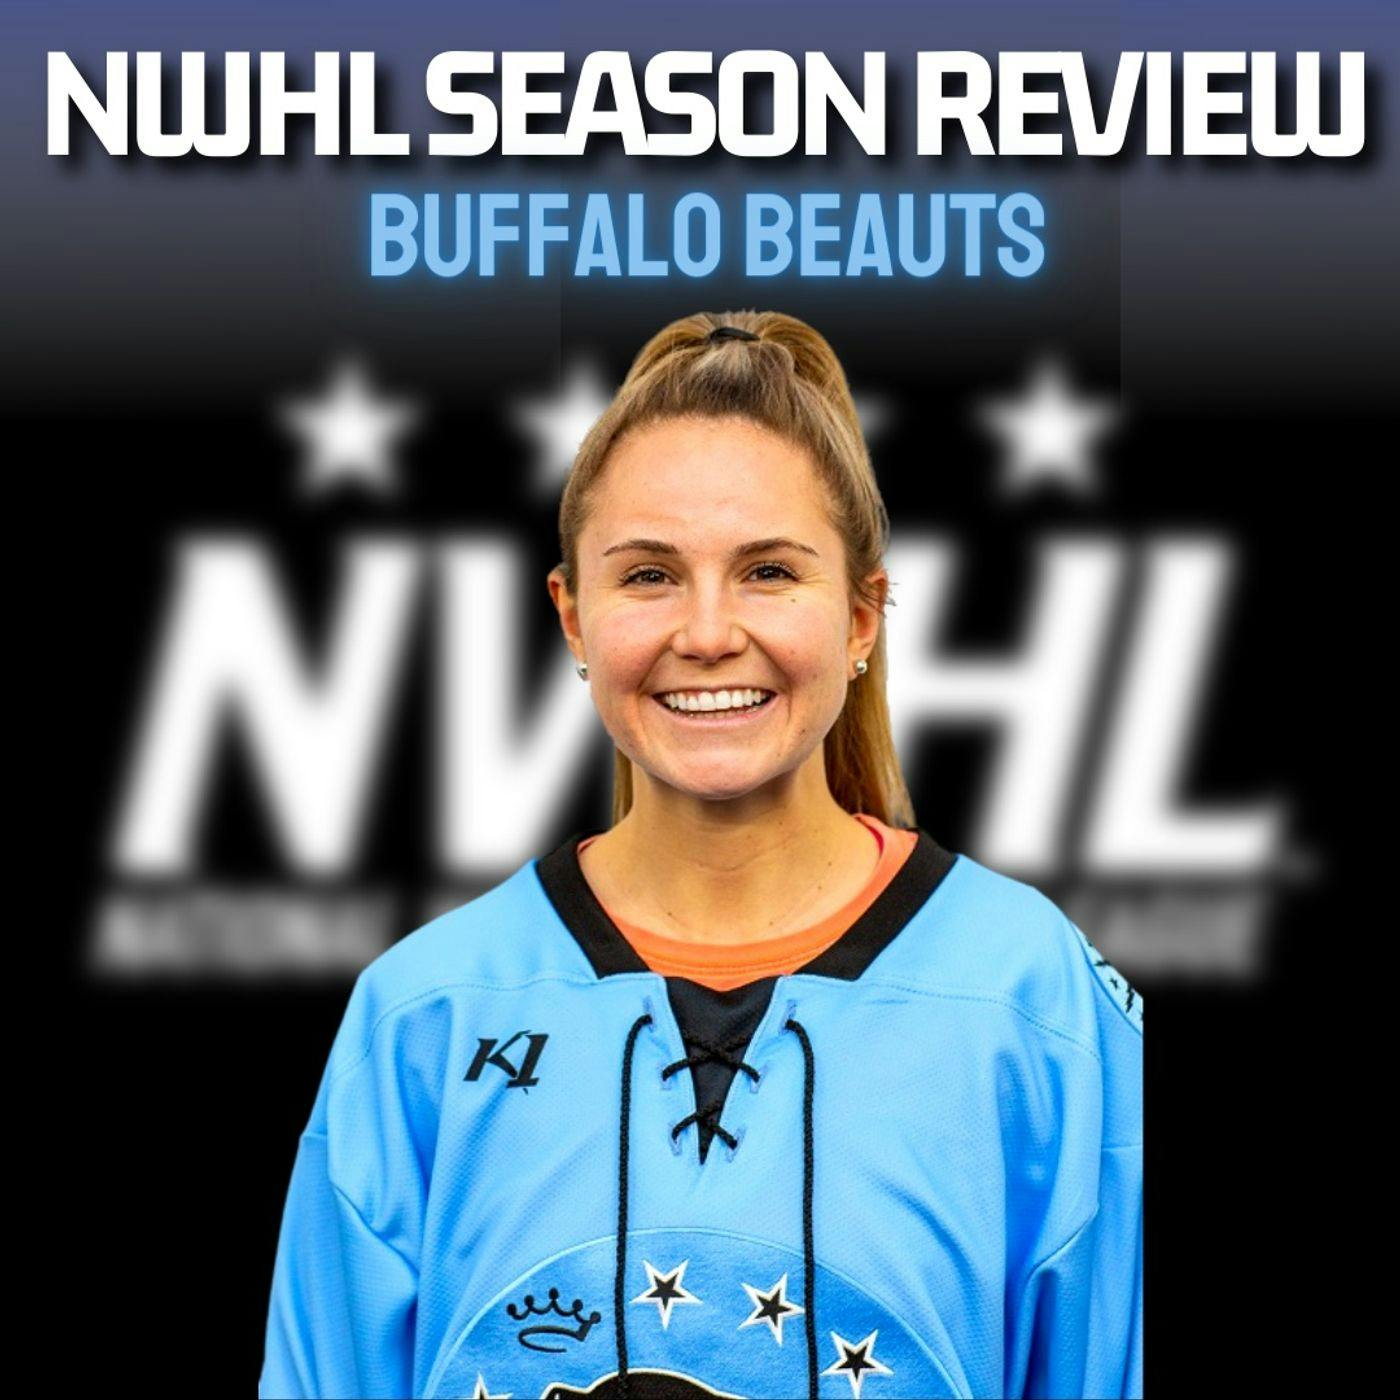 NWHL Season Review - BUFFALO BEAUTS! With Taylor Accursi